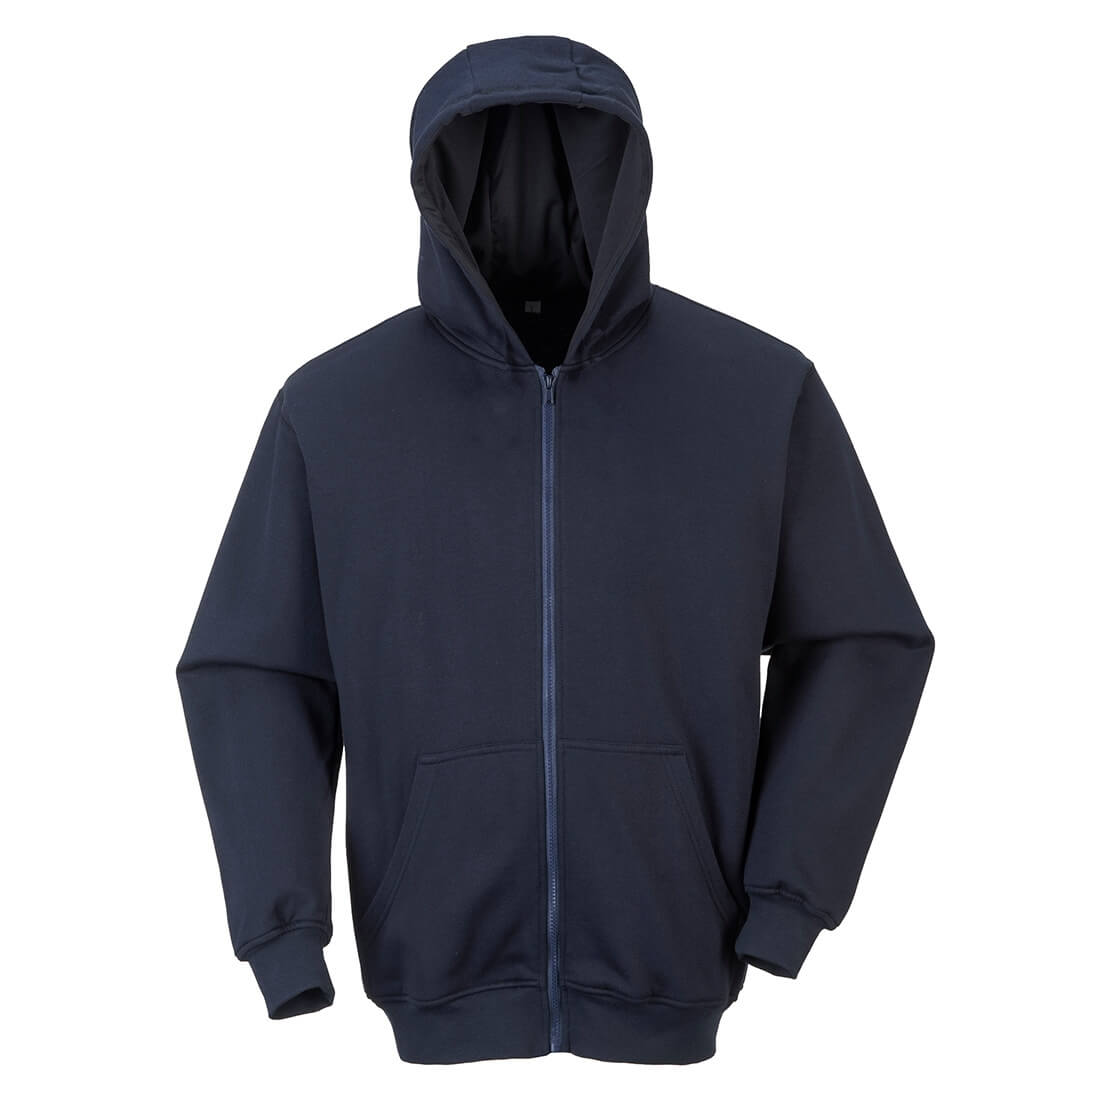 Sweatshirt FR zippe a capuche - Les vêtements de protection